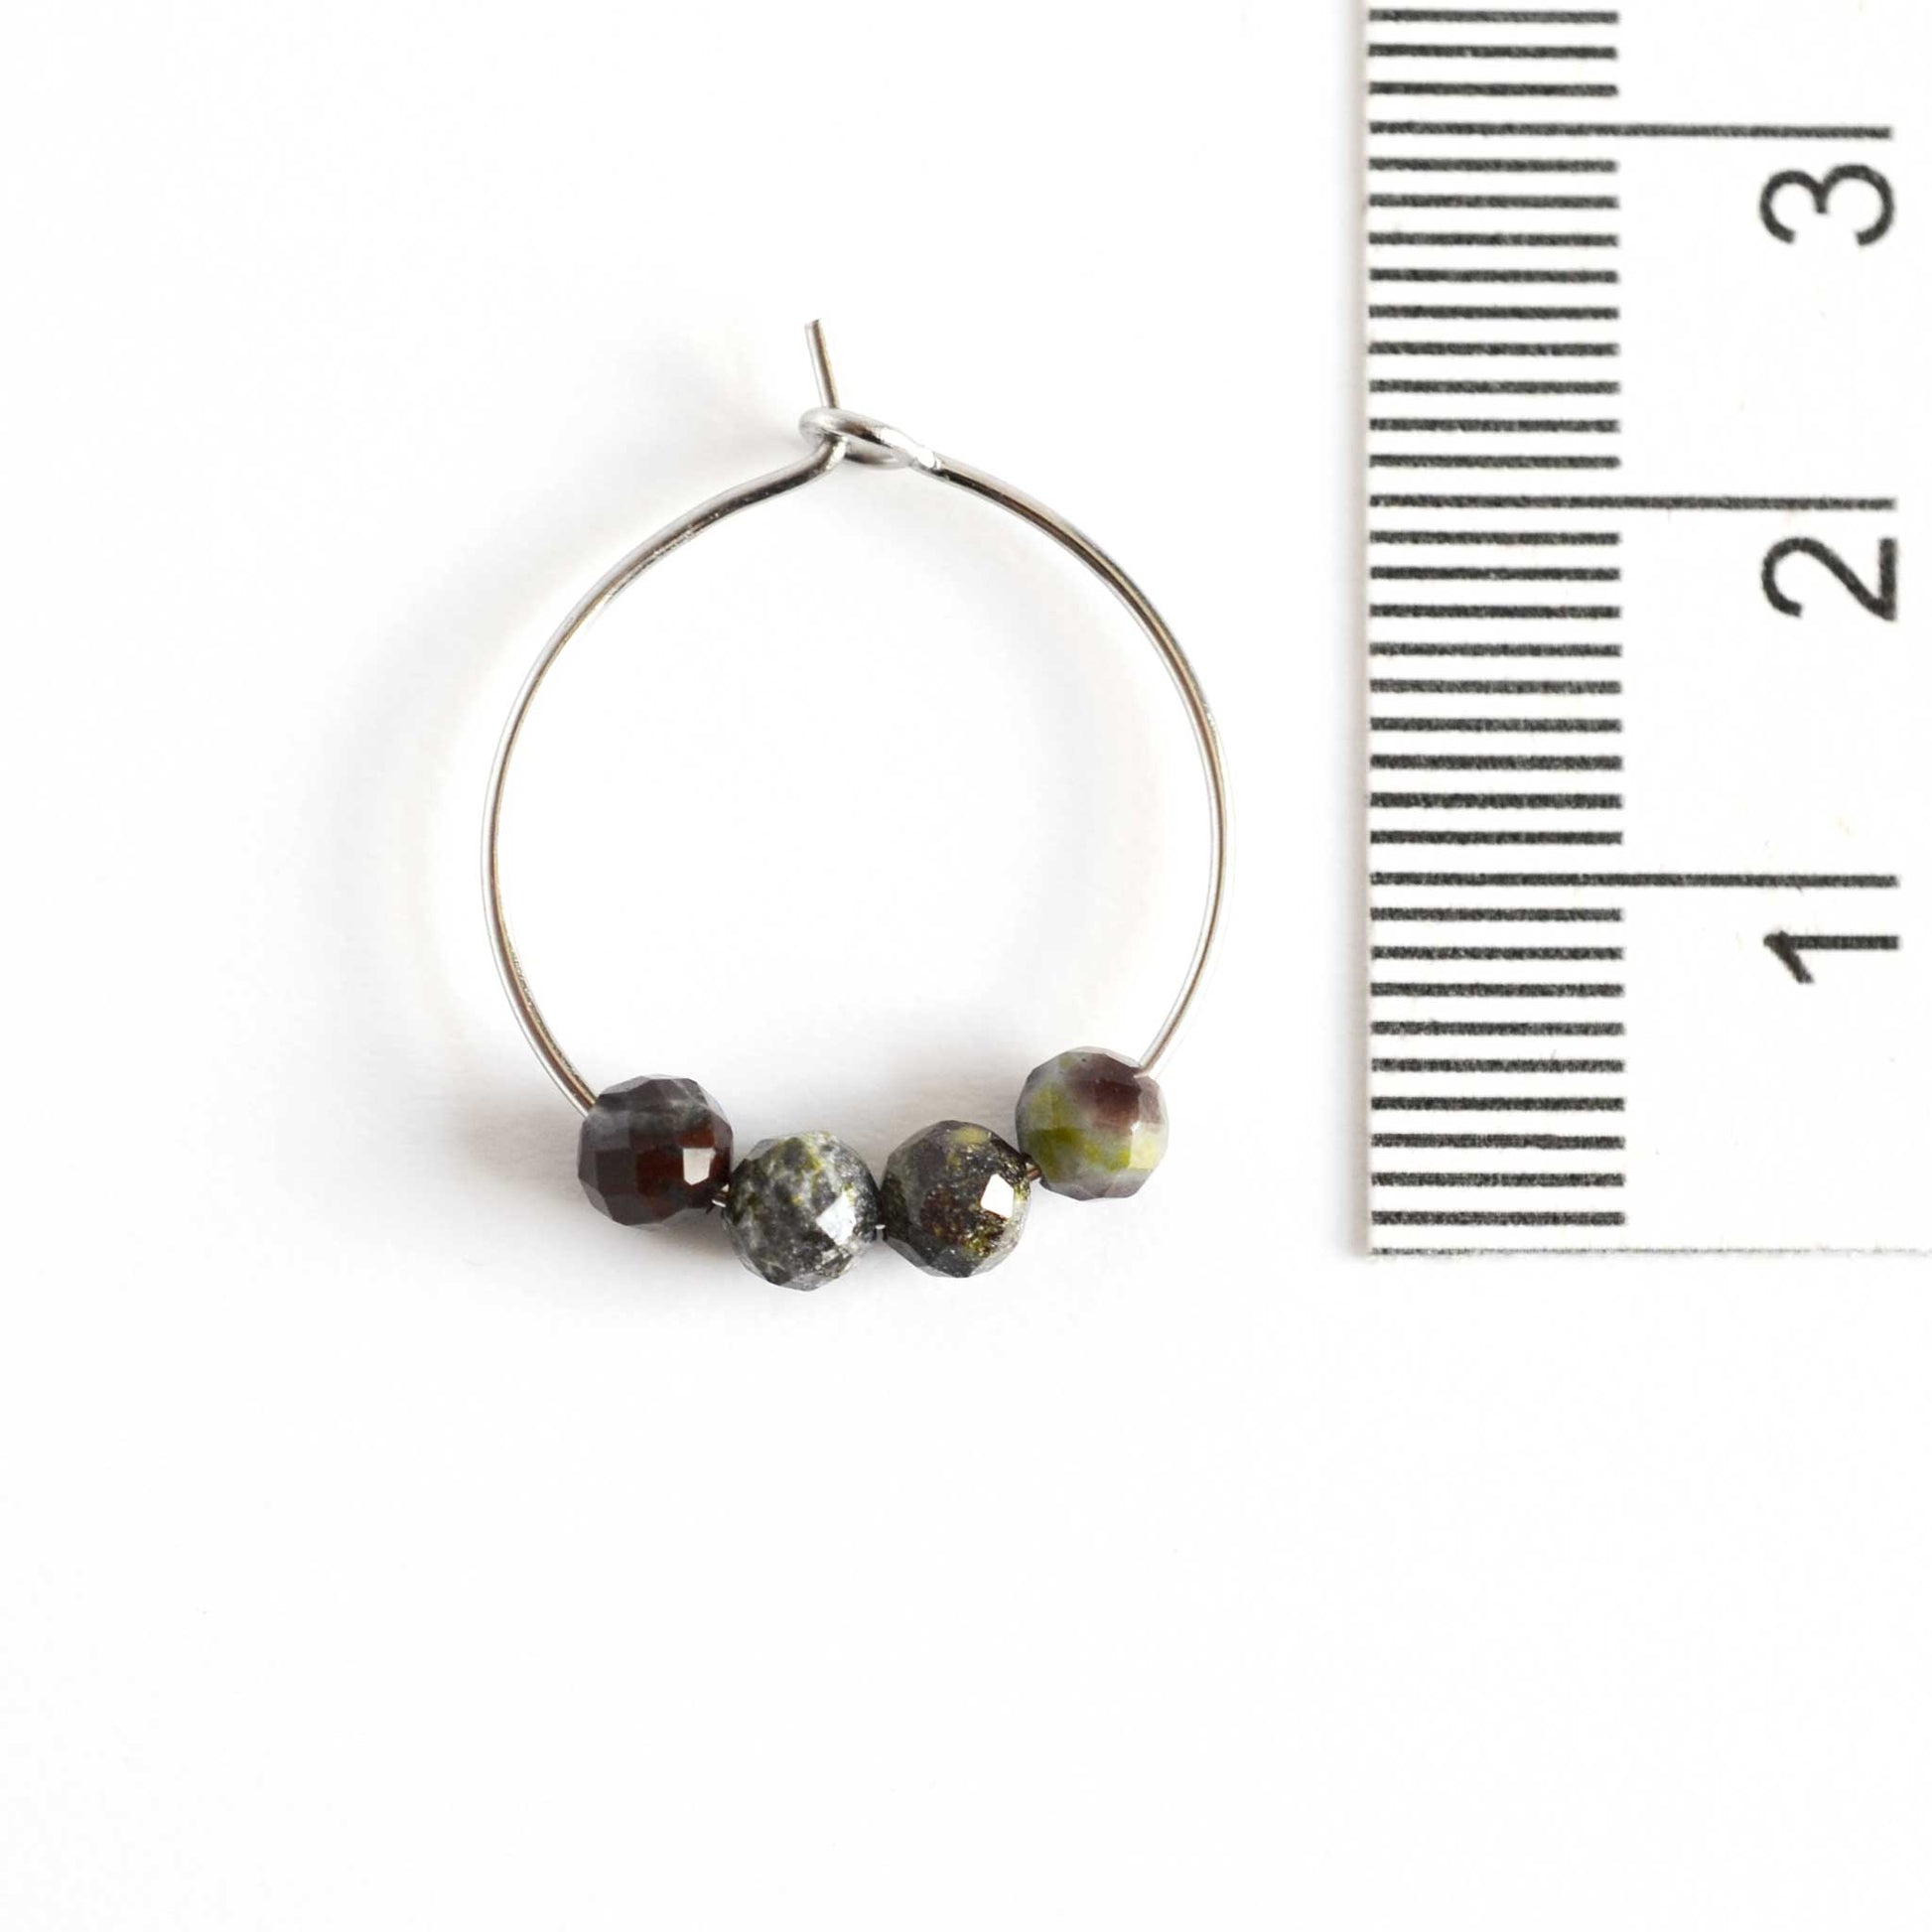 2cm diameter Bloodstone hoop earring next to ruler